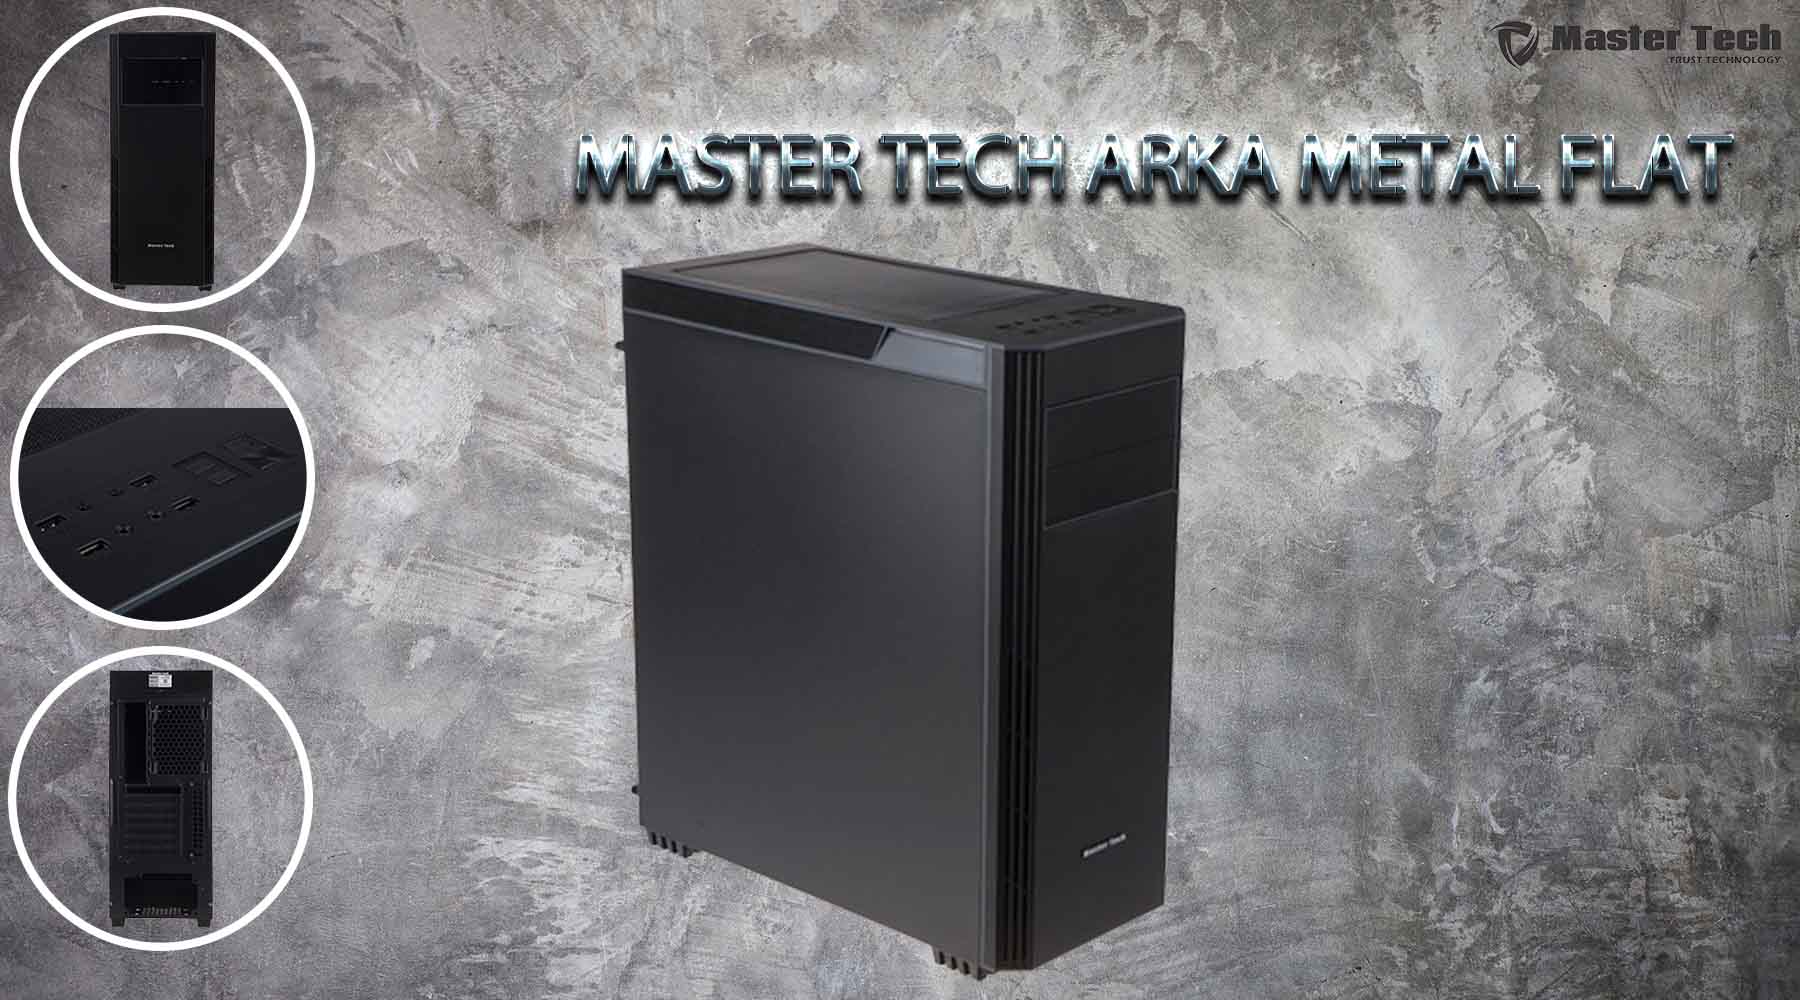 کیس کامپیوتر مسترتک Master Tech ARKA FLAT METAL